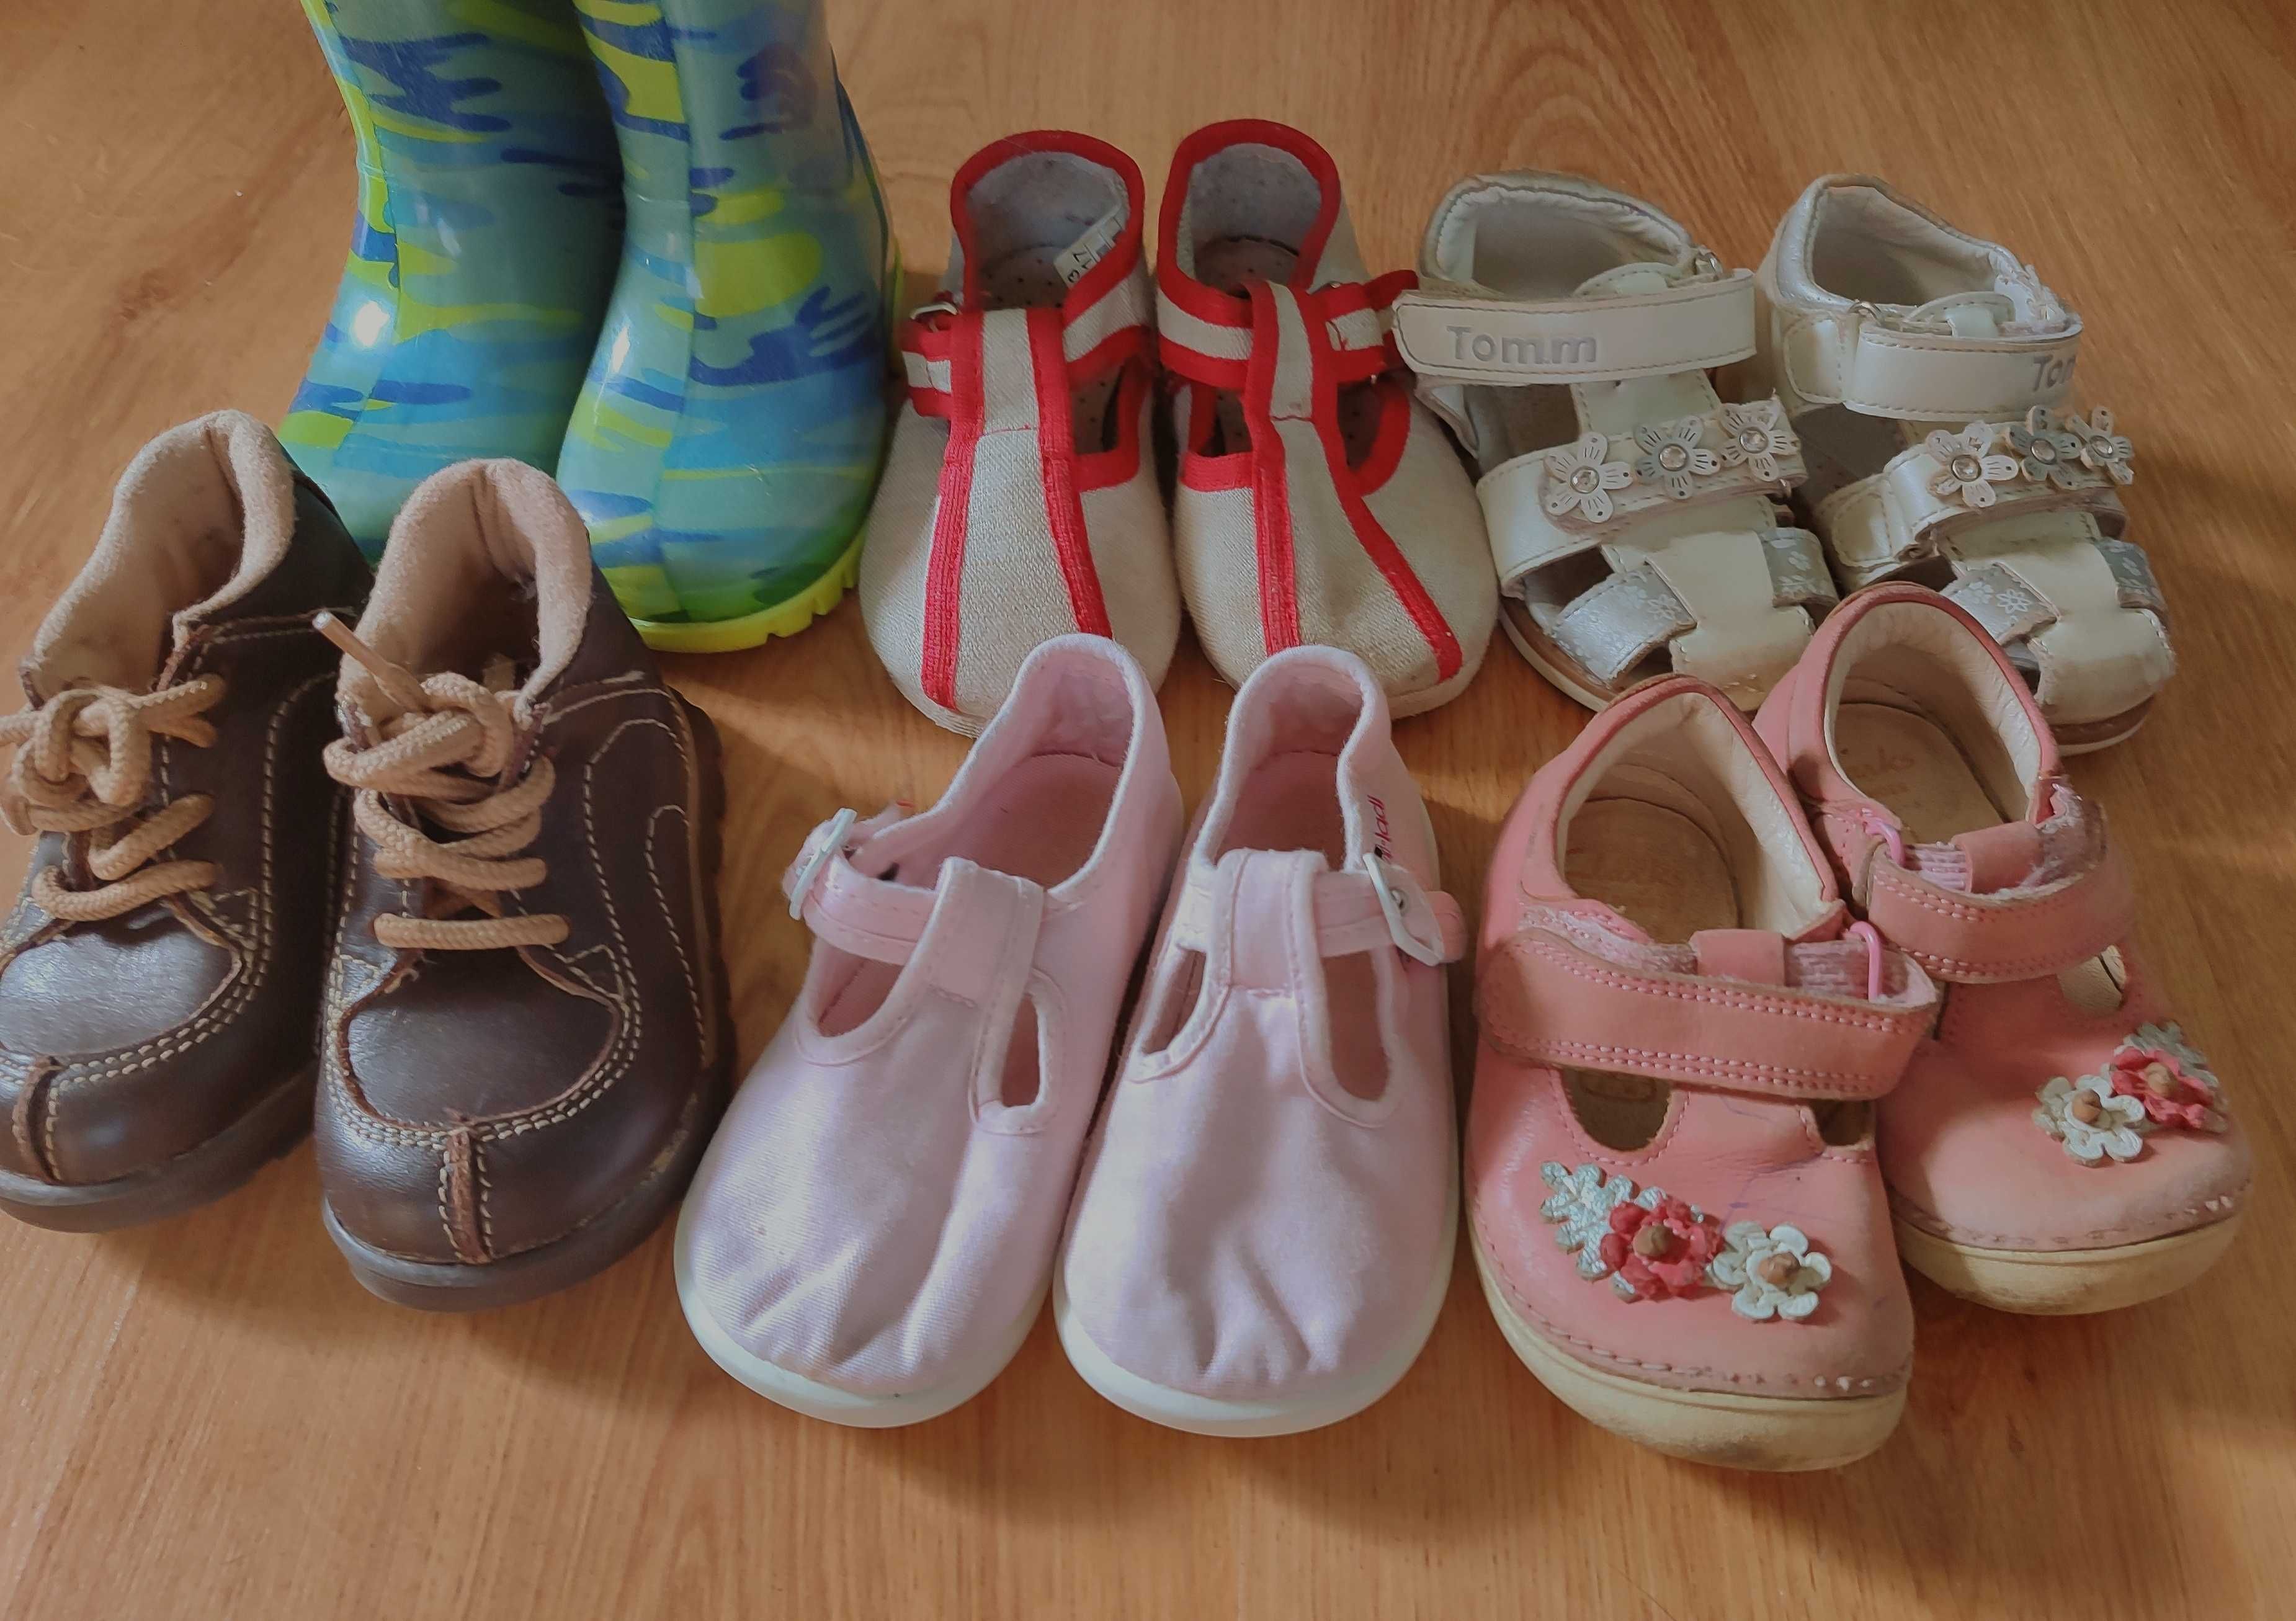 Дитяче взуття,сандалі, босоніжки clarks tom.m vulladi 21,22,23 розмір